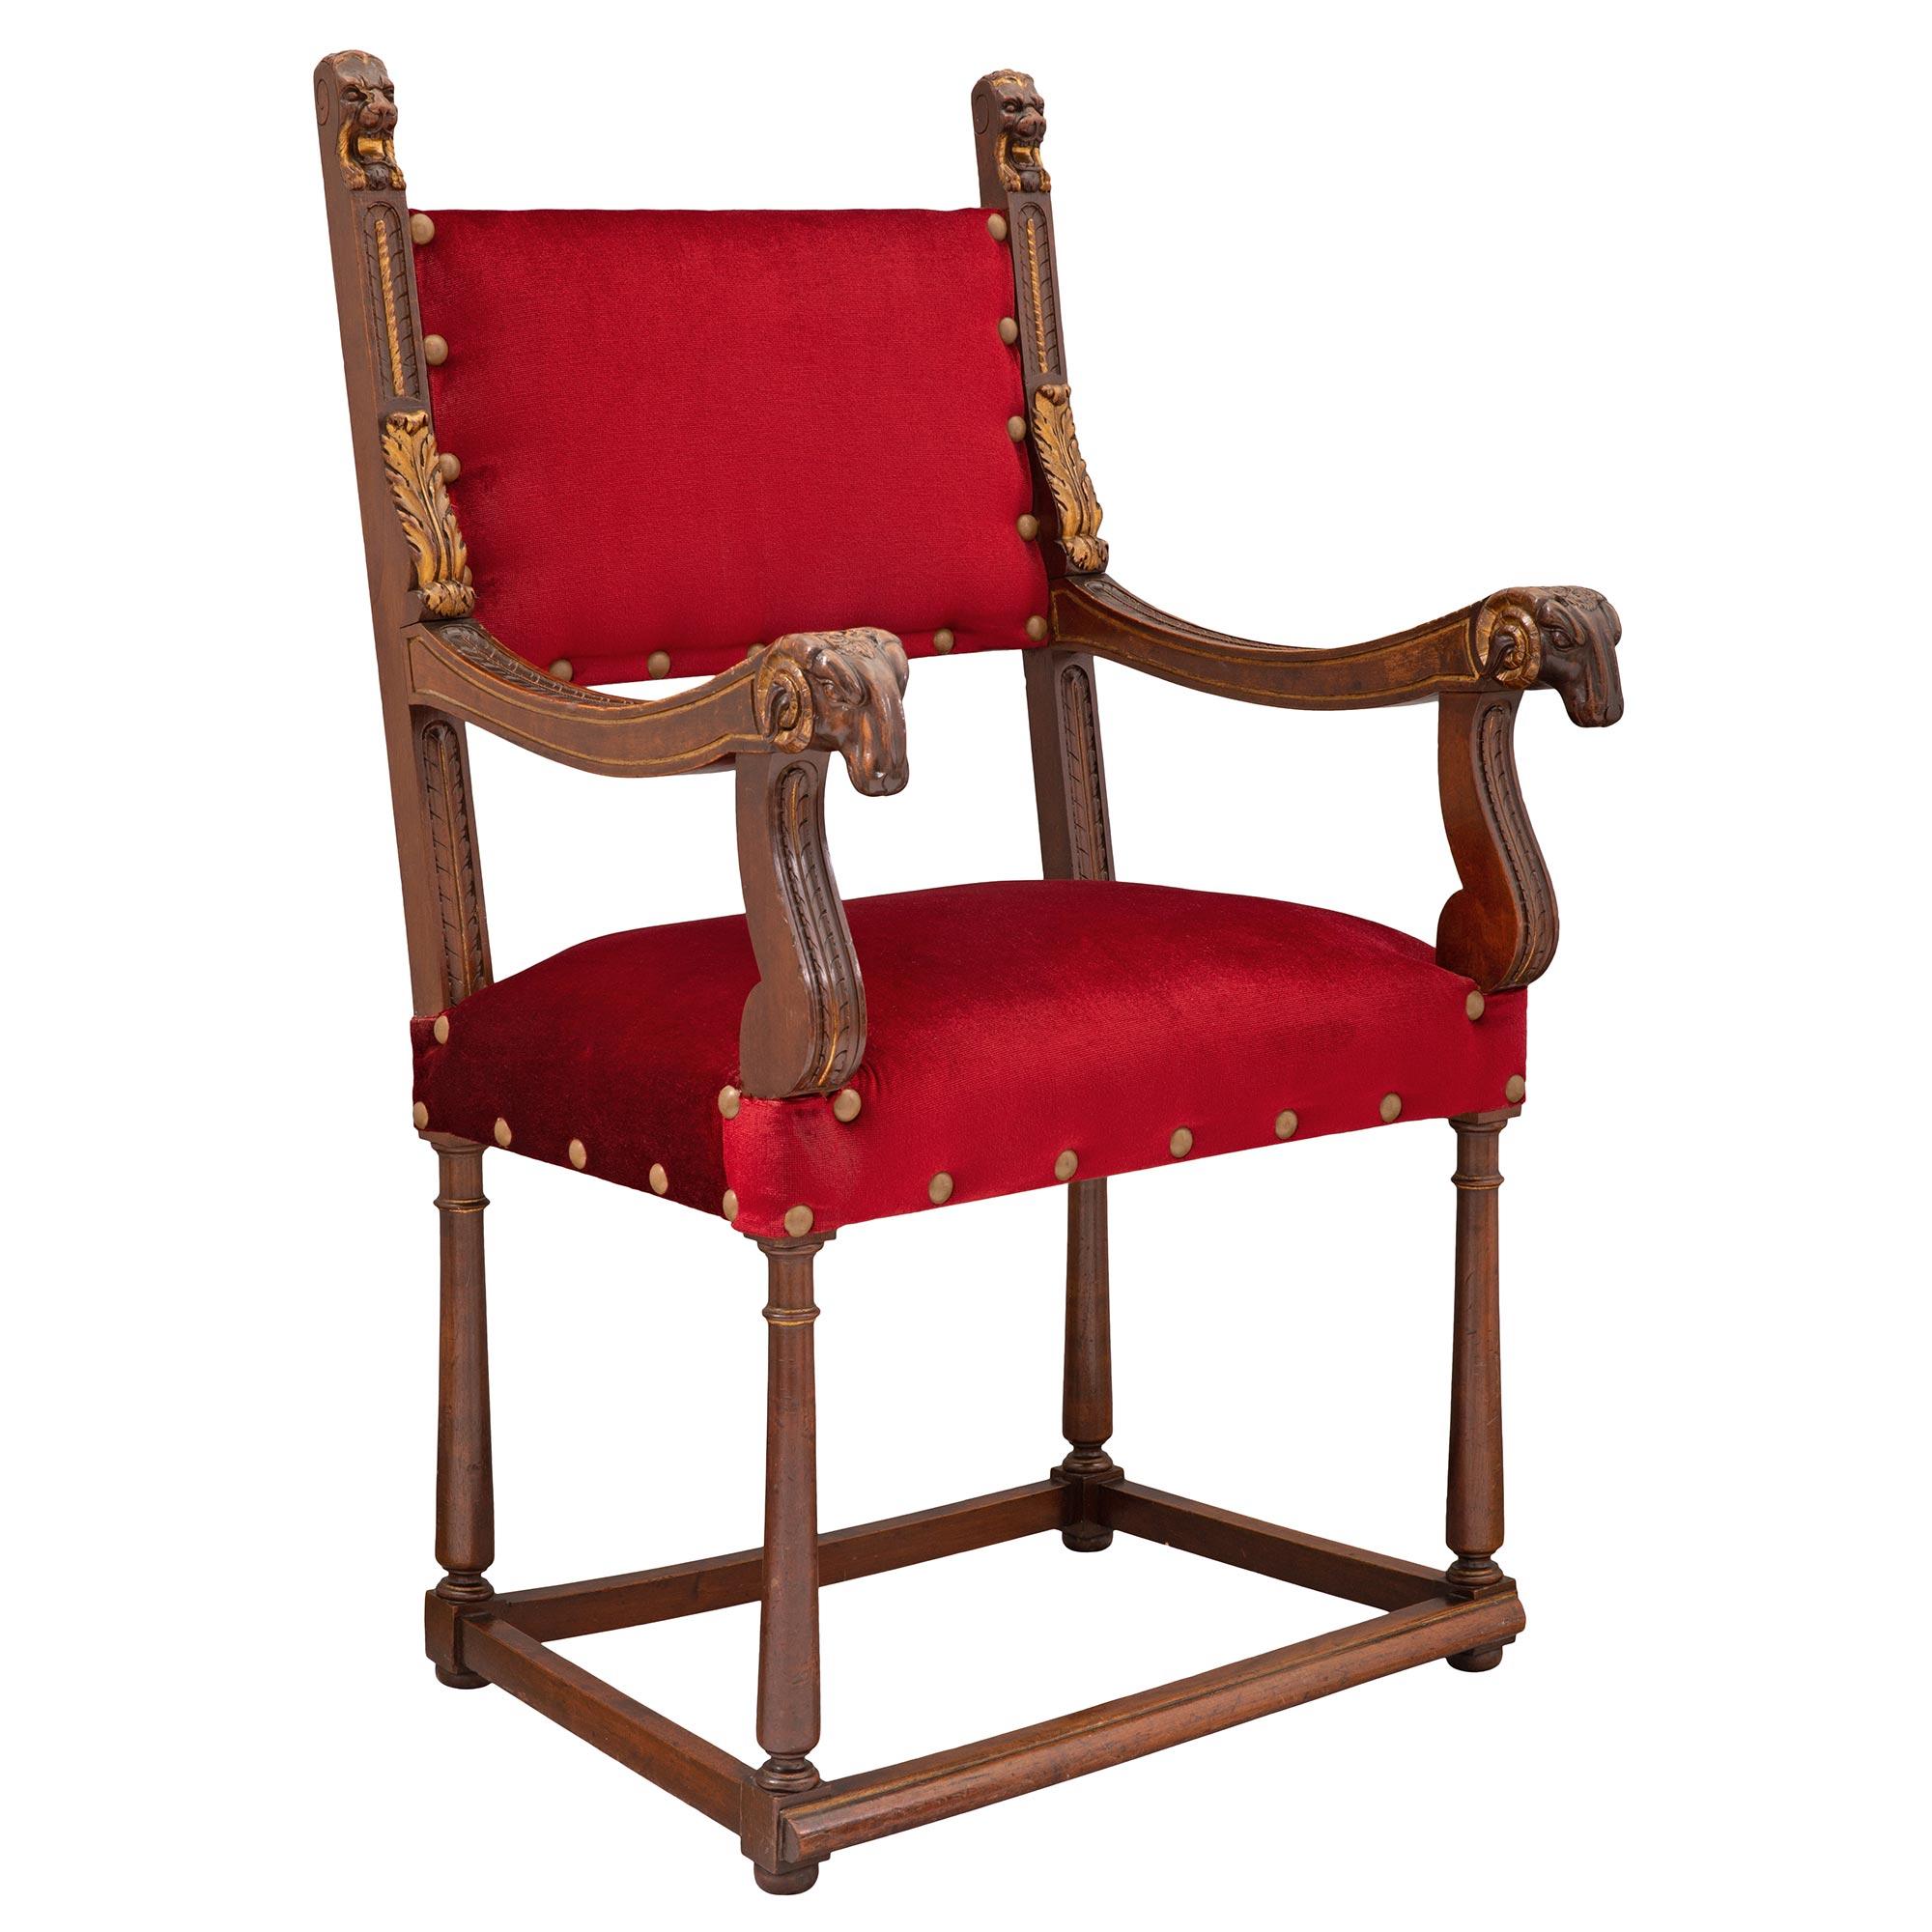 Une belle paire de fauteuils français du XIXe siècle en noyer et bois doré de style Renaissance. Chaque chaise est surélevée par d'élégants pieds tournés, effilés et circulaires, dotés de fins pieds chignons et reliés par une traverse droite à